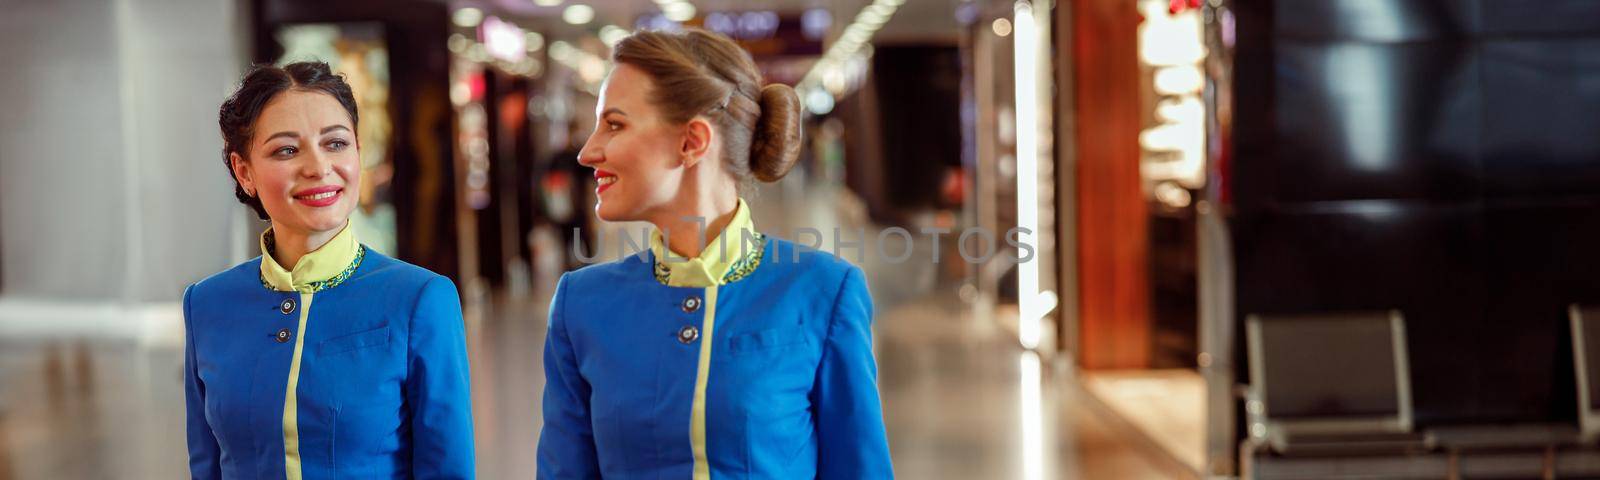 Two cheerful women stewardesses in air hostess uniform walking down airport terminal